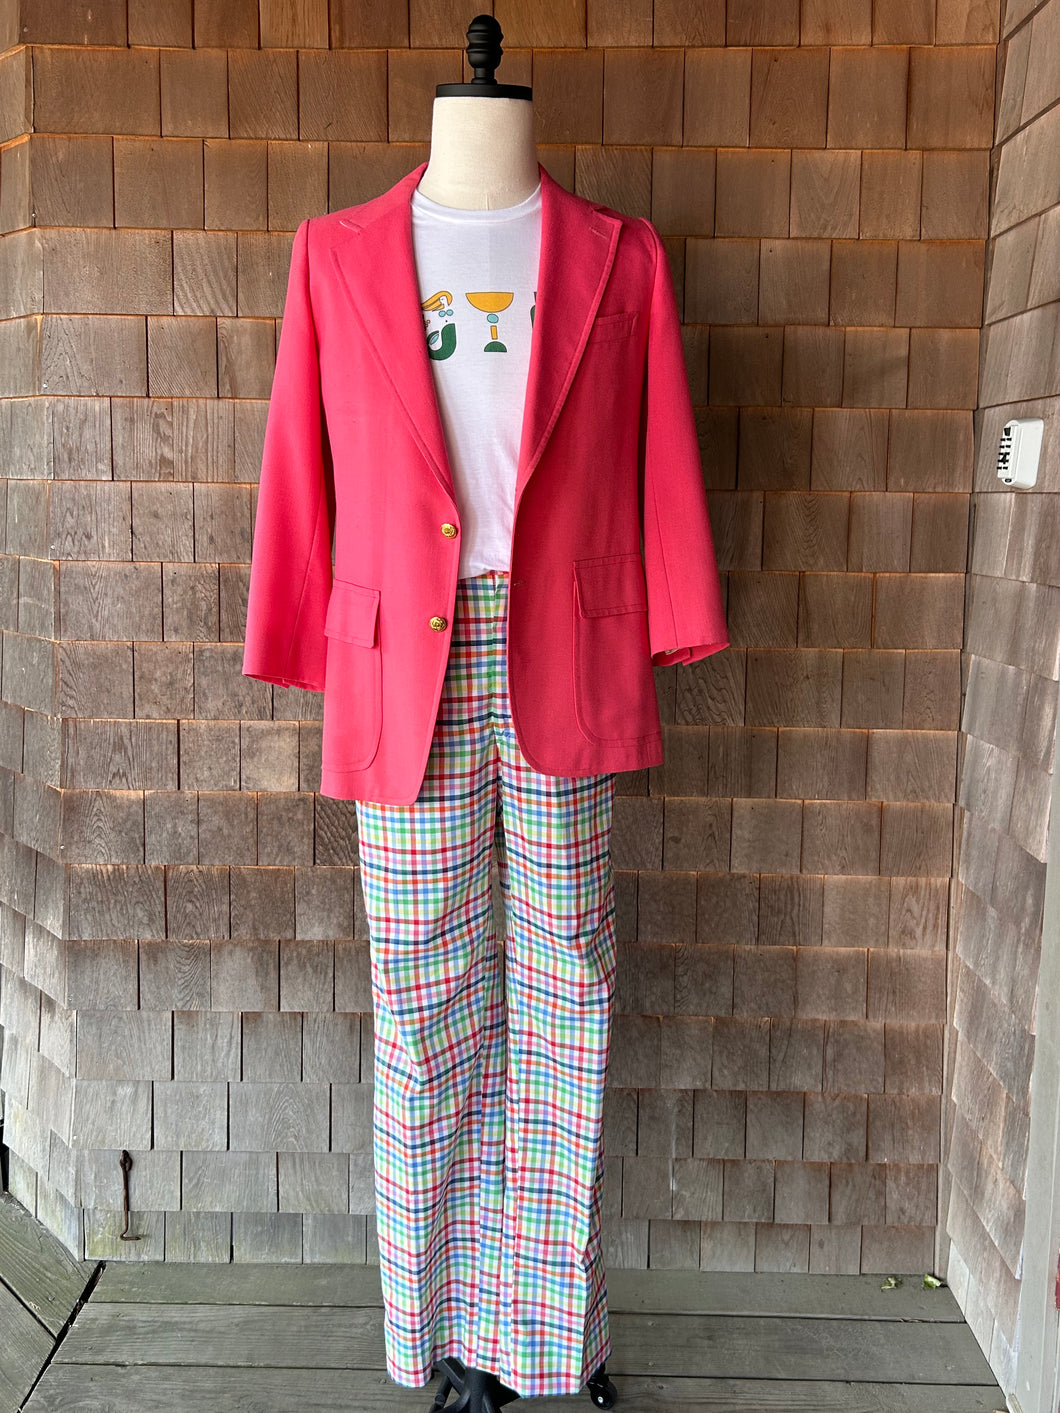 Vintage Lilly Men's Stuff Coral Pink Jacket